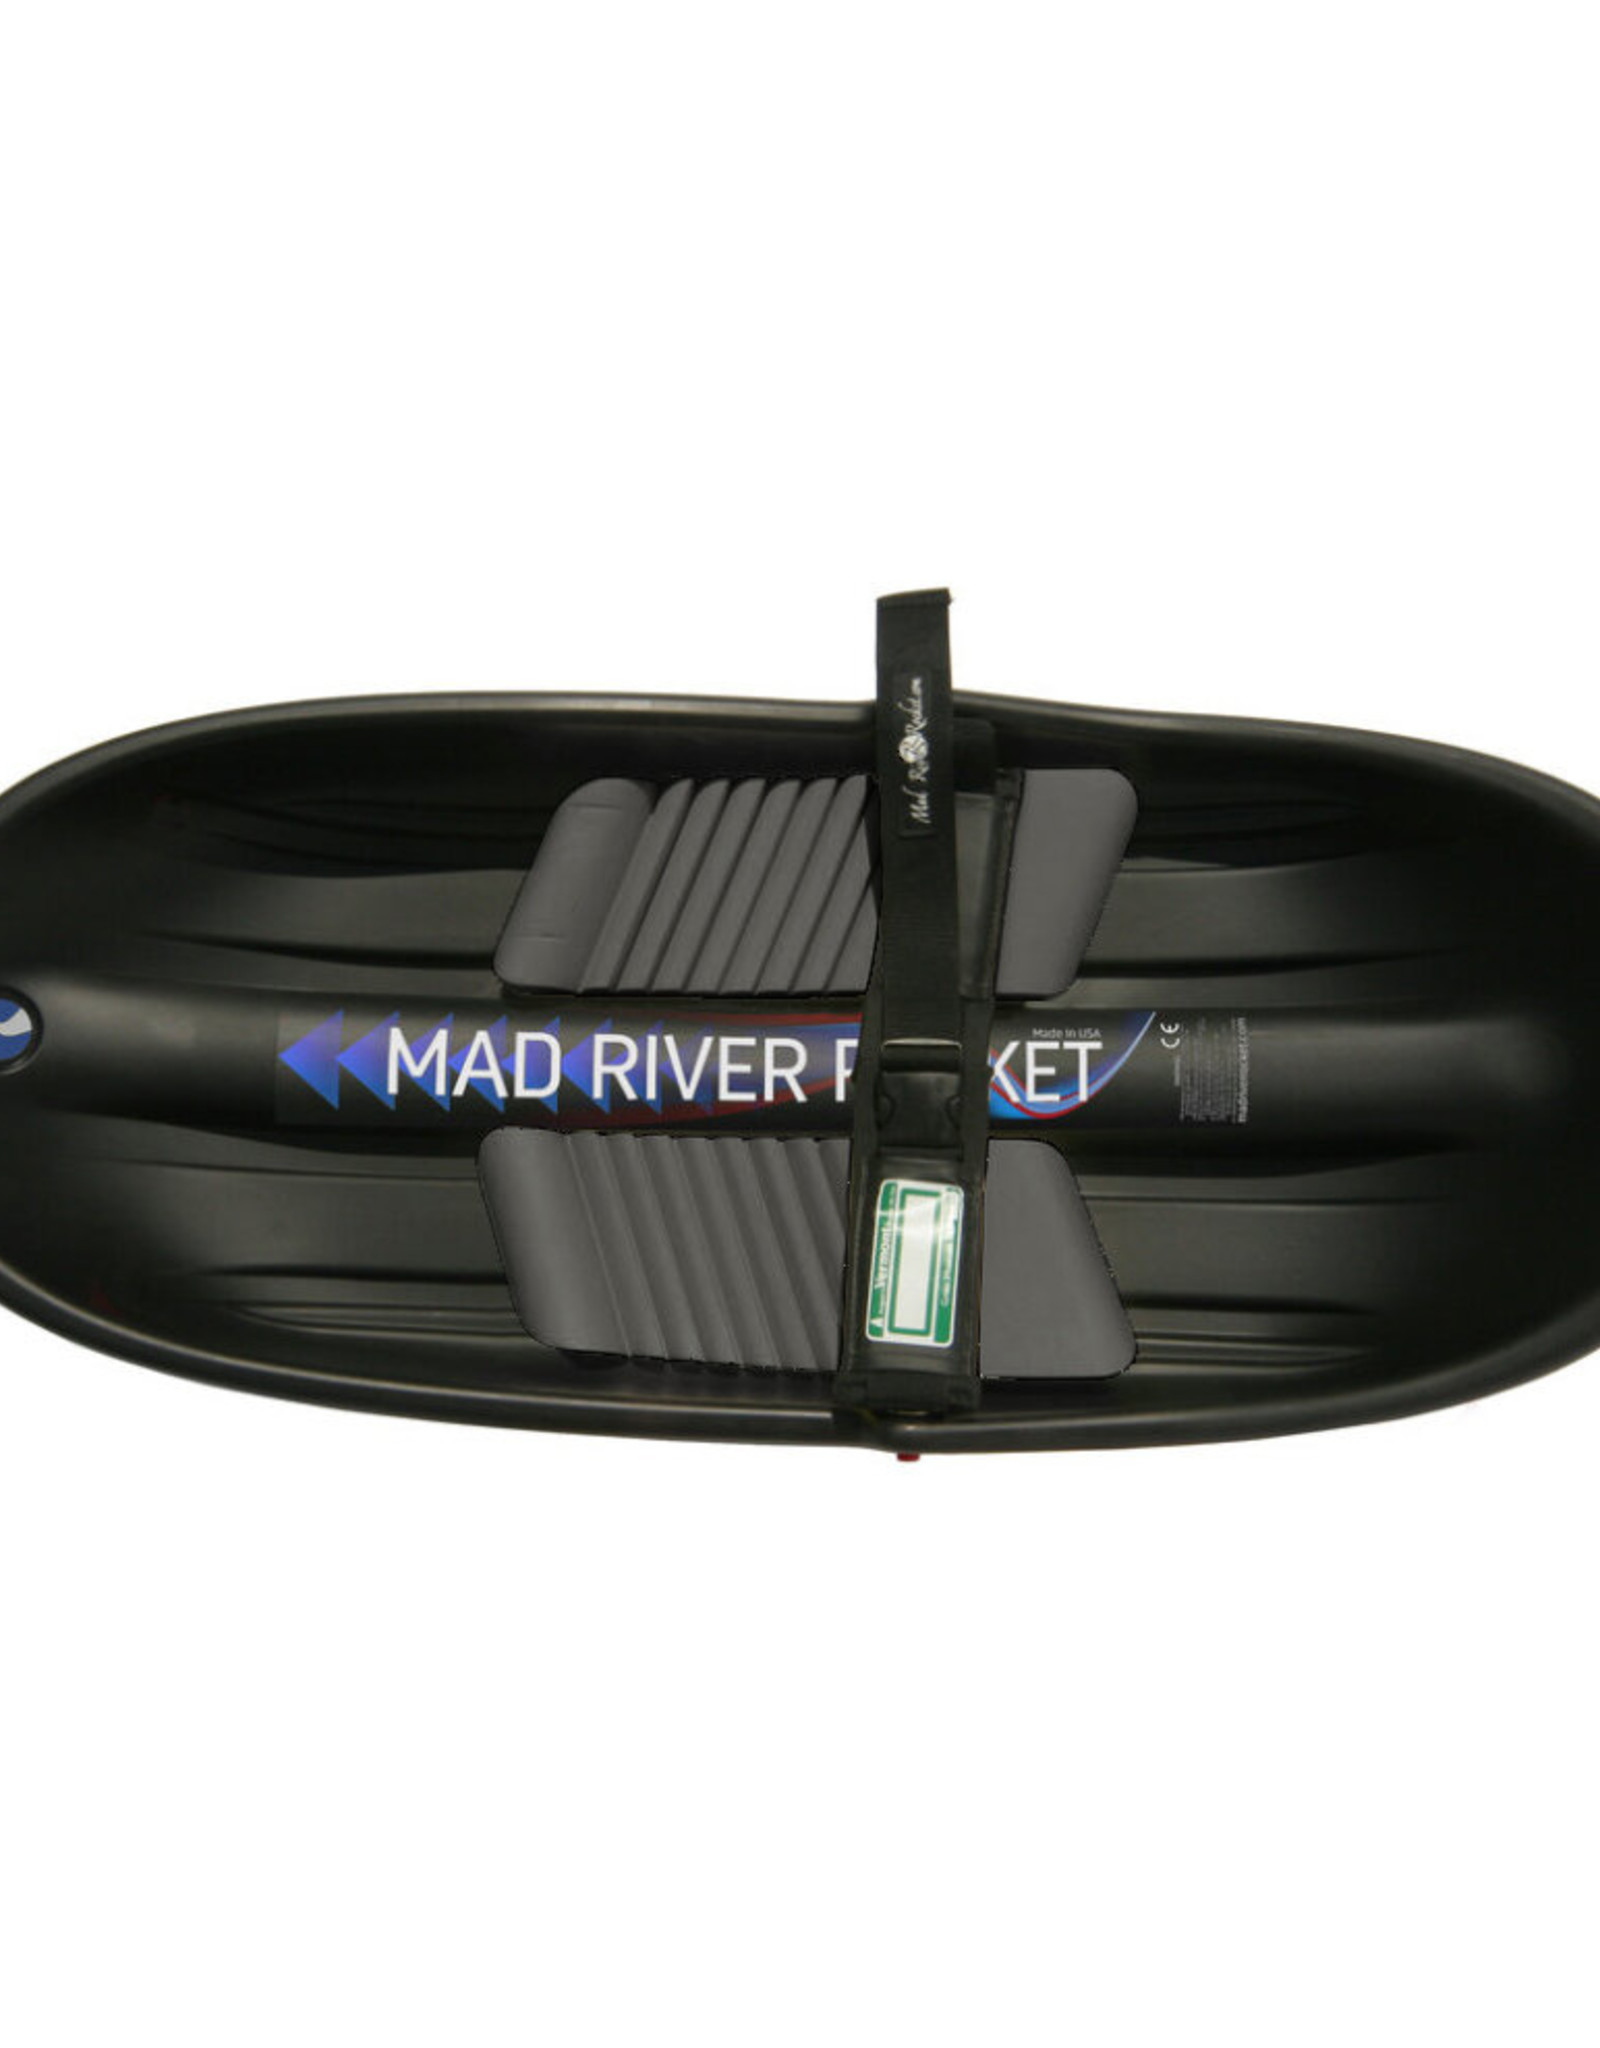 Mad River Rocket Mad River Rocket Large Black Sled